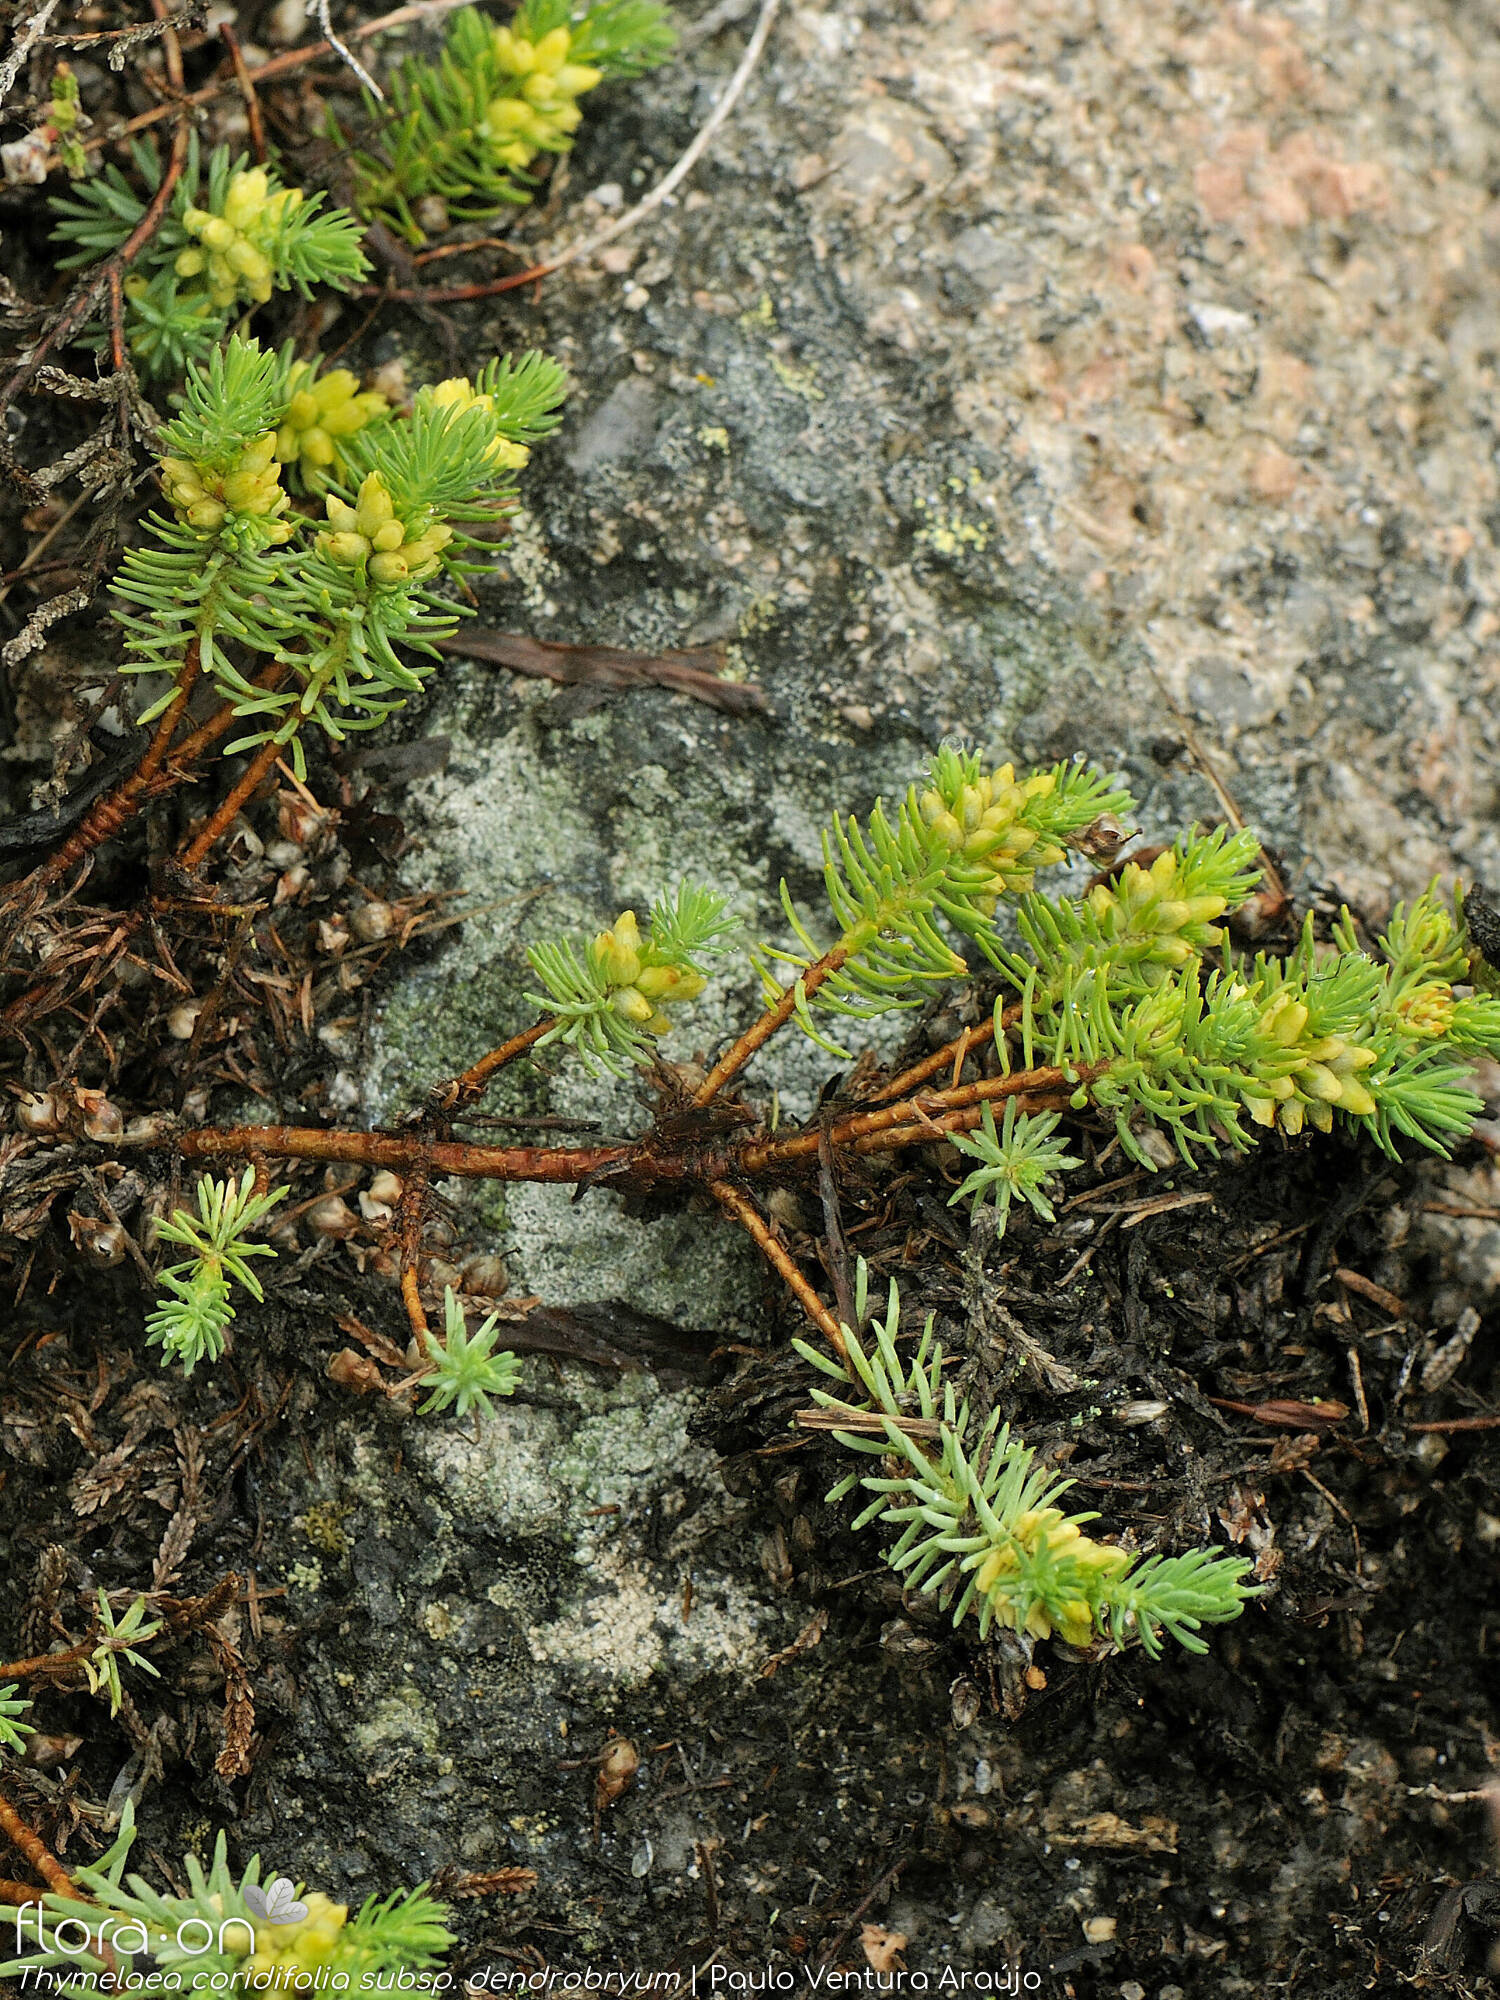 Thymelaea coridifolia dendrobryum - Hábito | Paulo Ventura Araújo; CC BY-NC 4.0